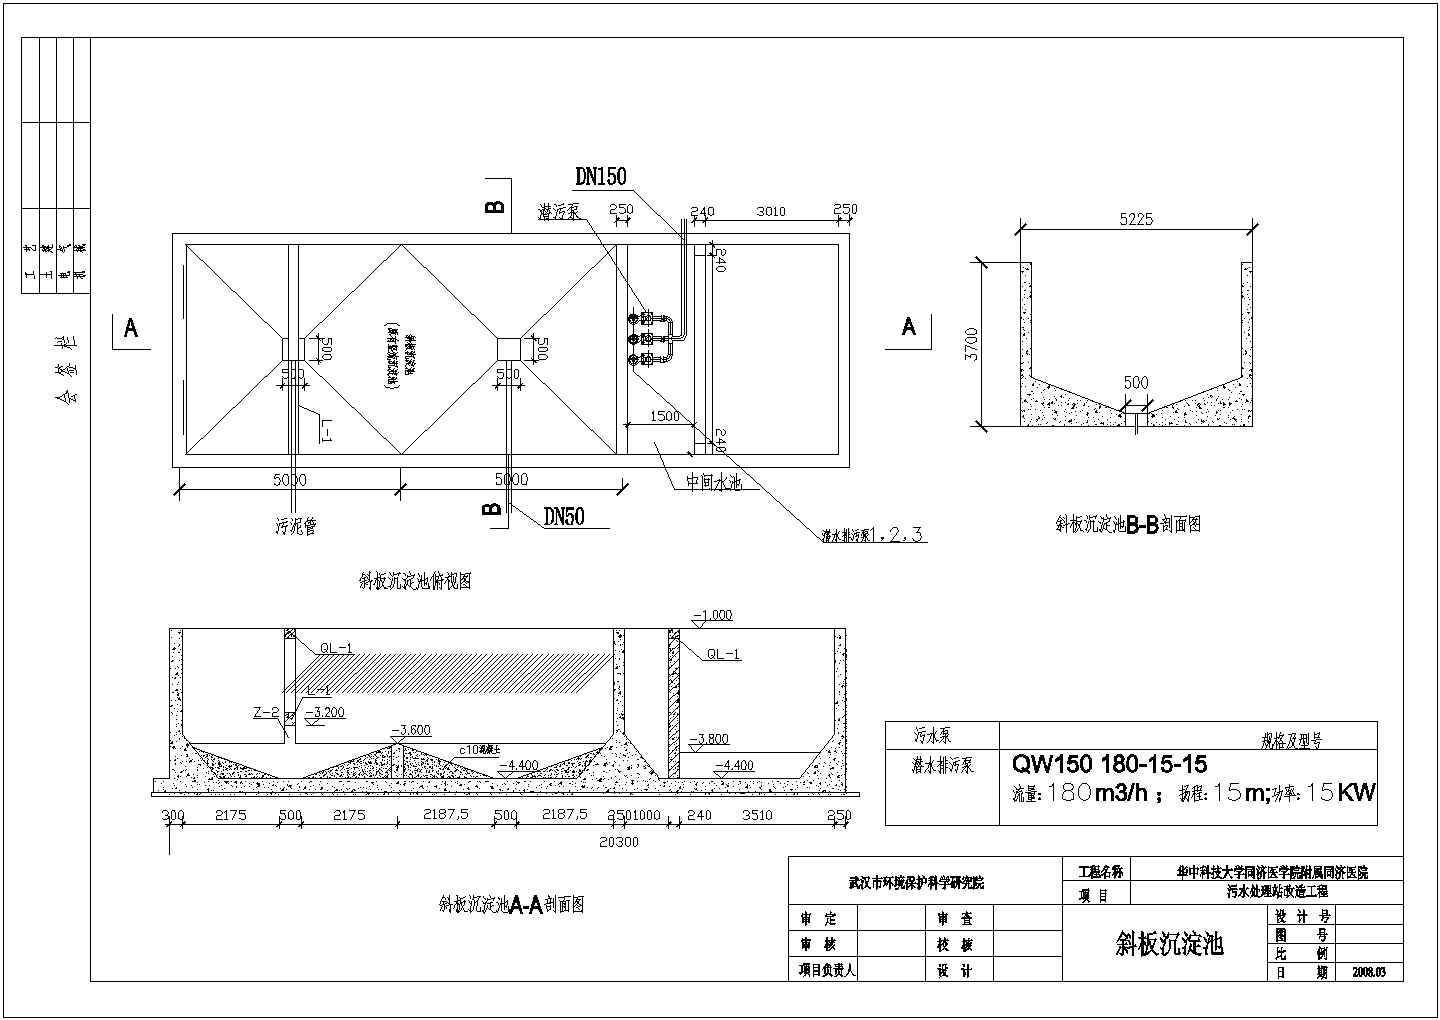 武汉某医院污水处理站改造方案成套图纸